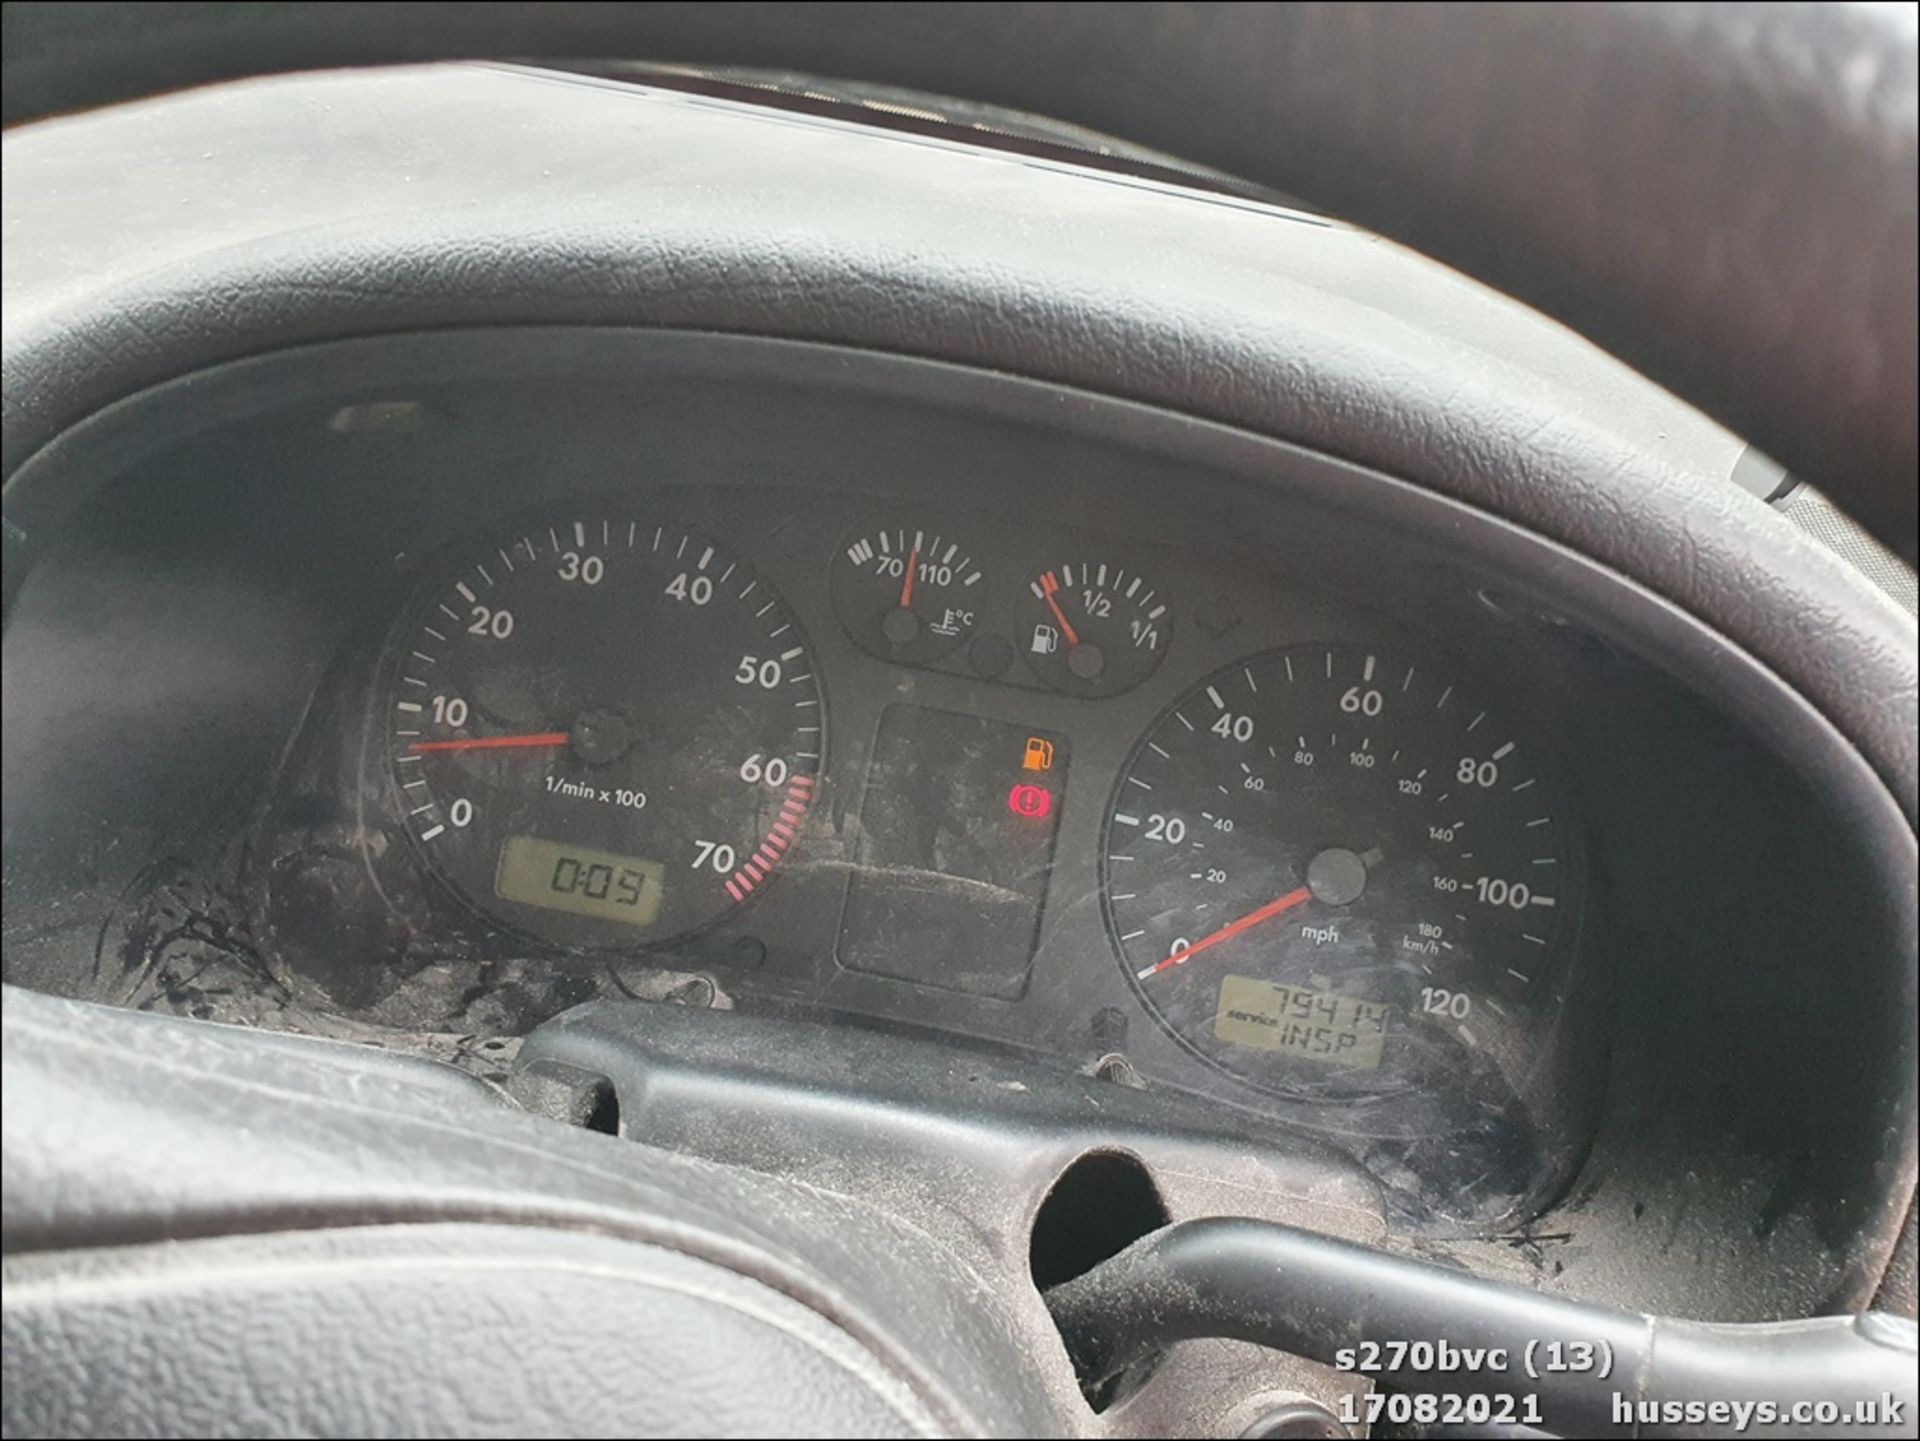 1999 SEAT AROSA 1.0 MPI - 998cc 3dr Hatchback (Red, 79k) - Image 13 of 14